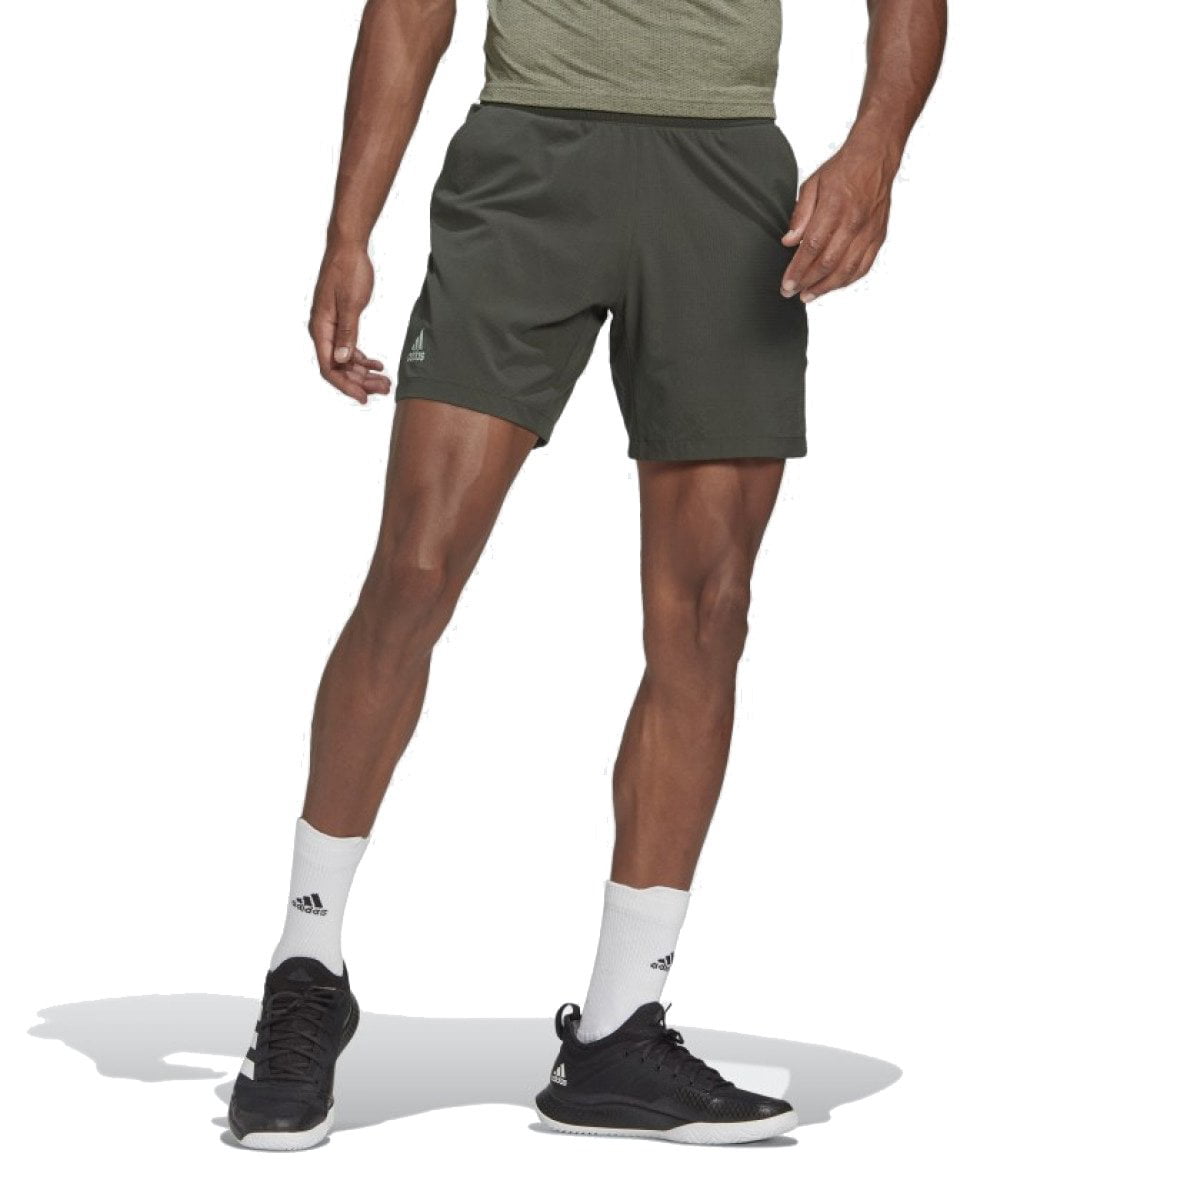 Adidas Men's Ergo Shorts, Earth / - Walmart.com